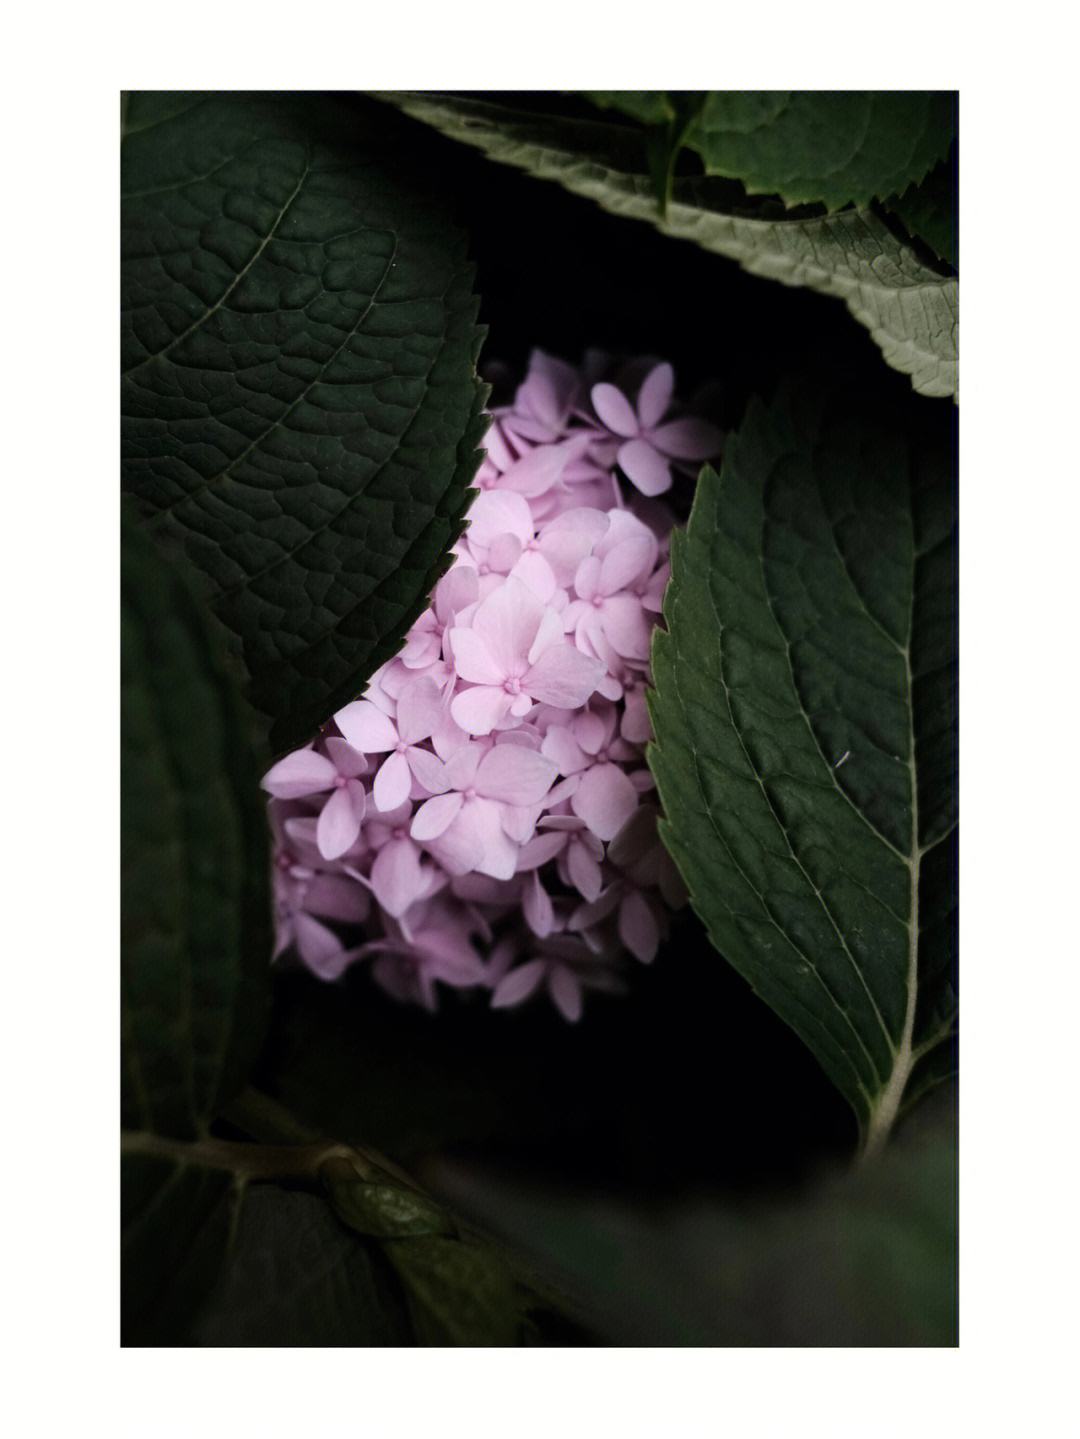 hydrangea花语图片